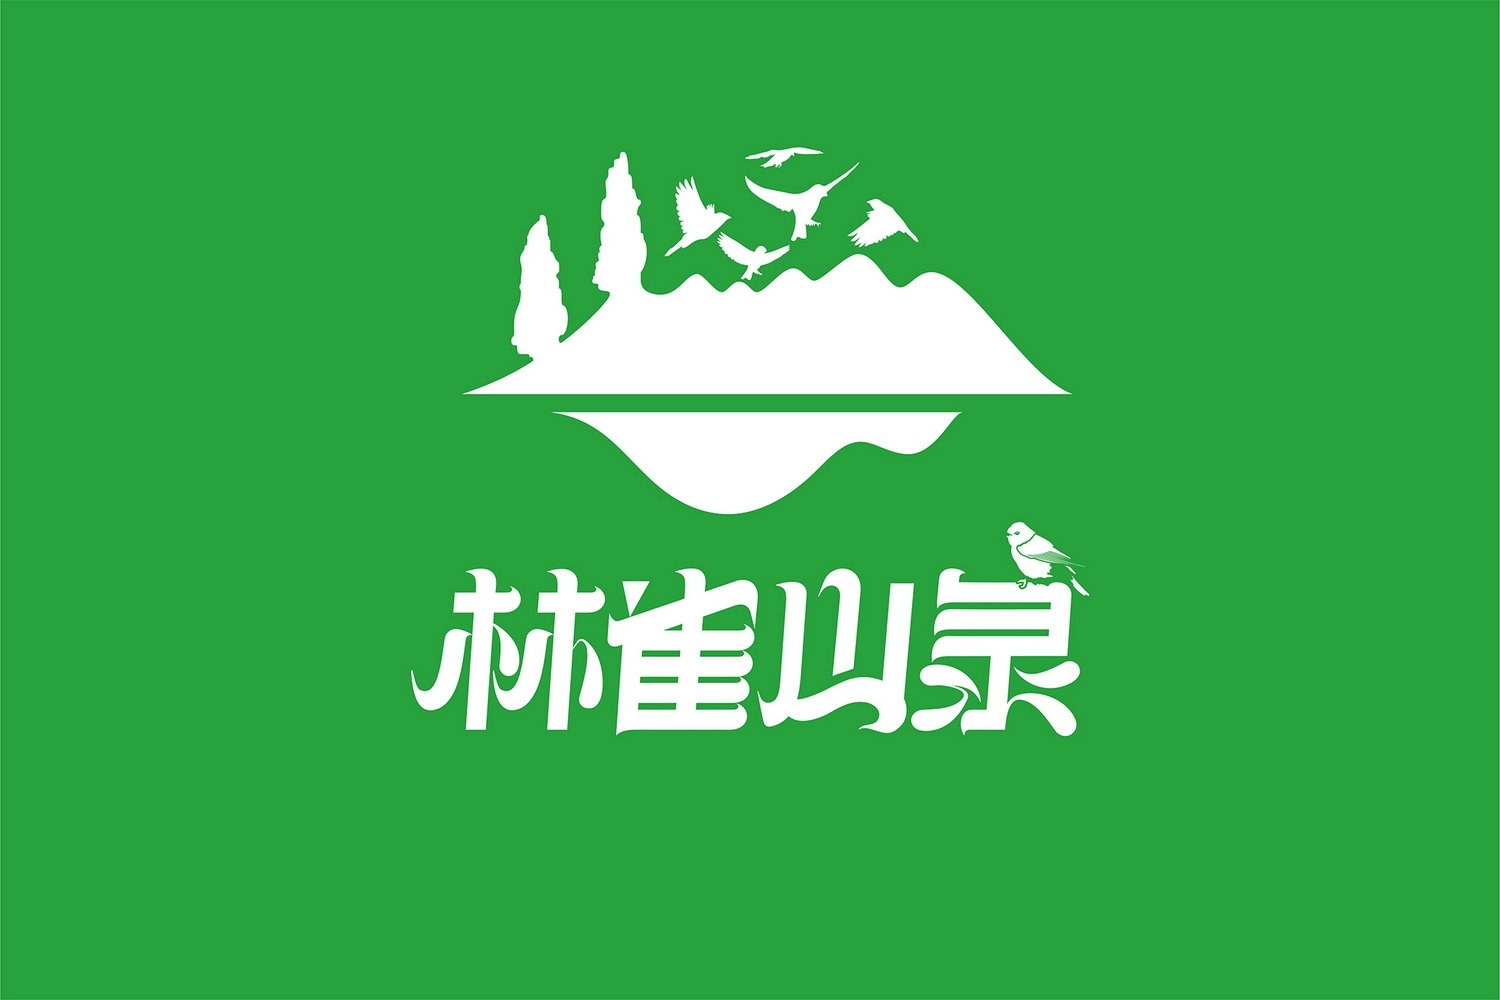 林雀山泉logo设计2.jpg-厚启包装设计